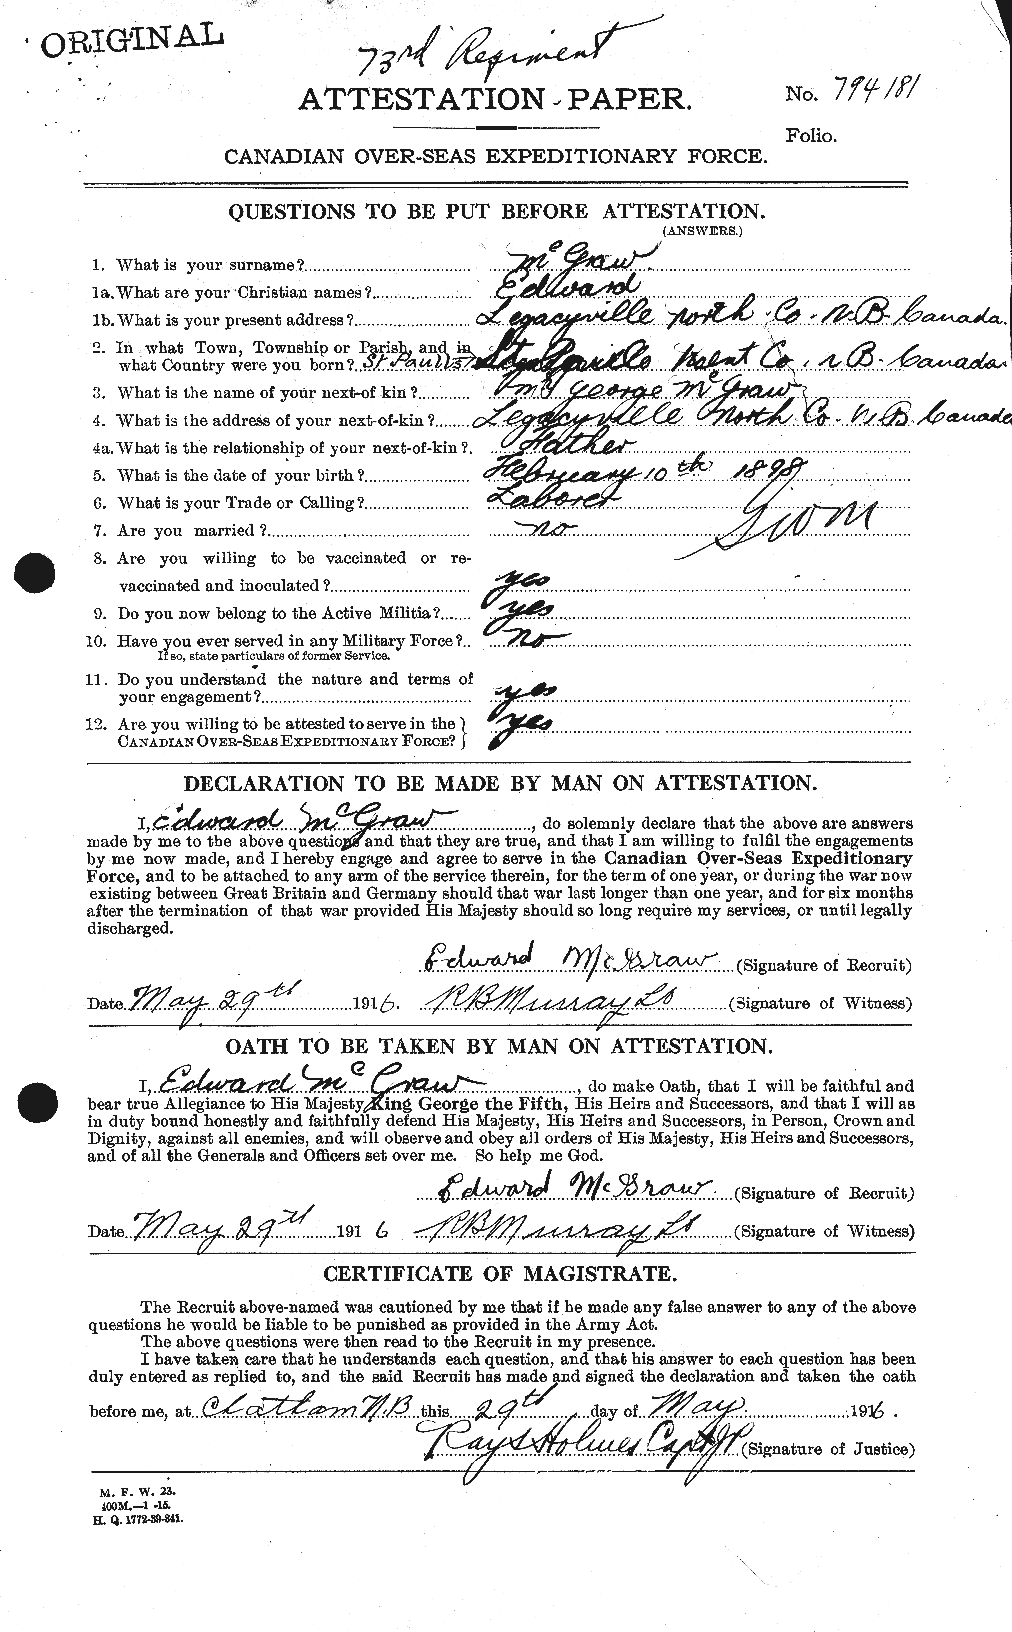 Dossiers du Personnel de la Première Guerre mondiale - CEC 523721a